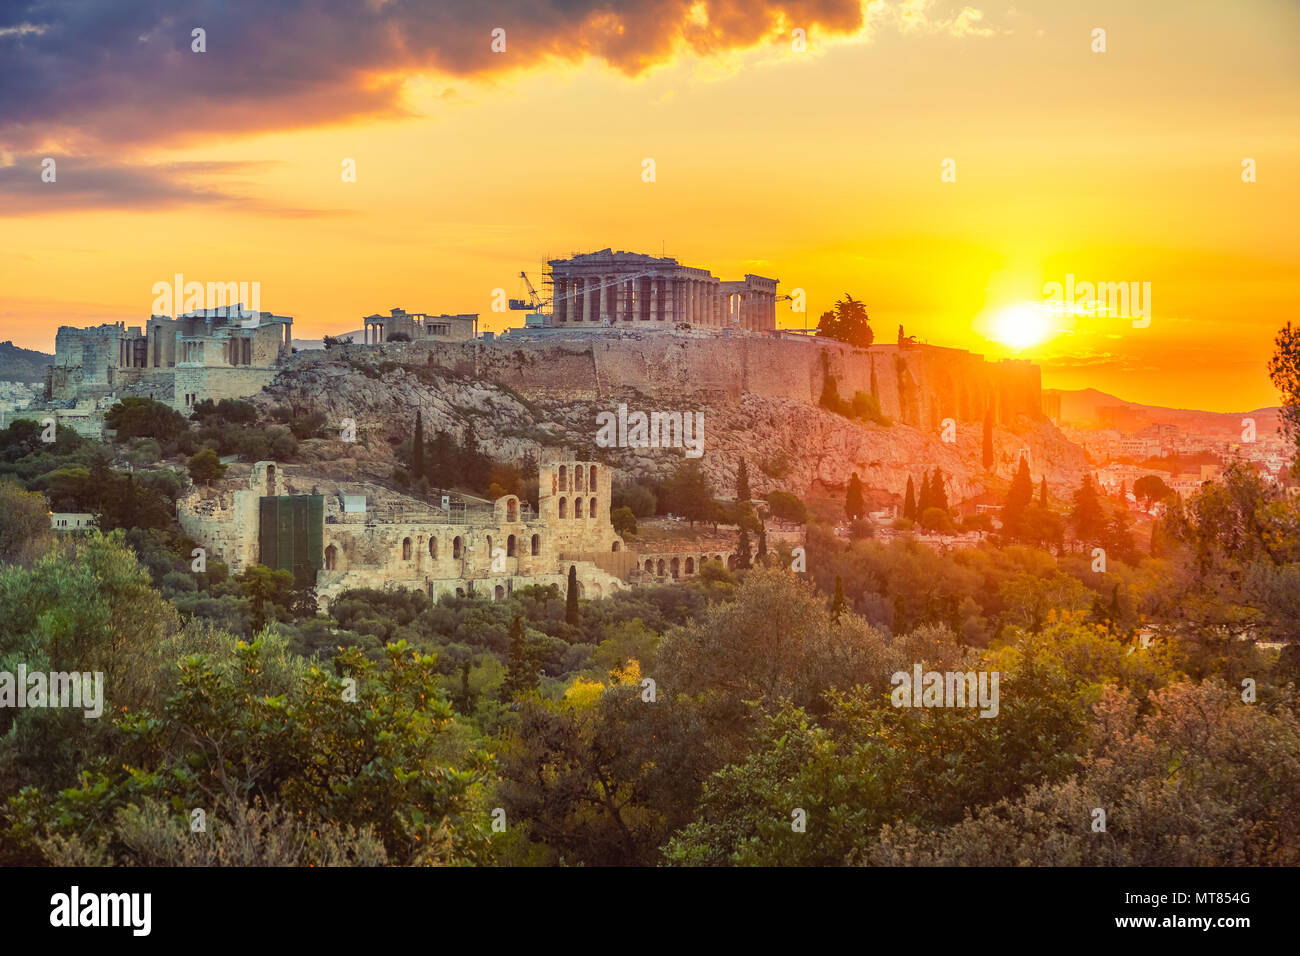 Lever de Soleil sur le Parthénon, l'acropole d'Athènes, Grèce Banque D'Images